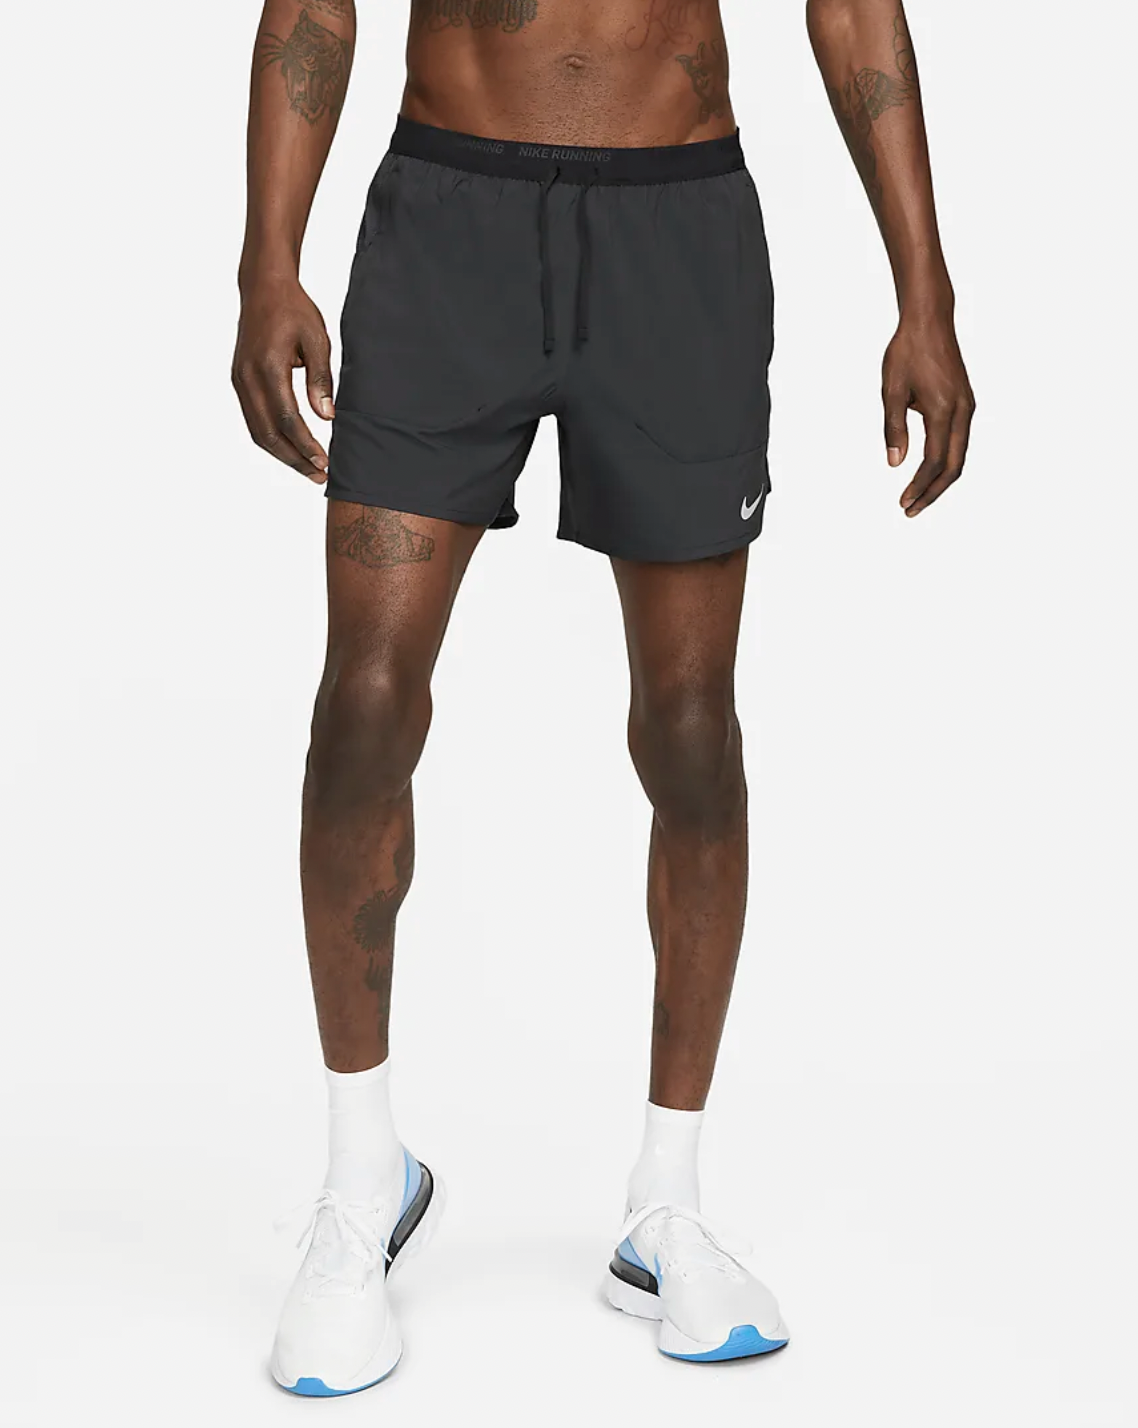 Men's Functional Hybrid Training Shorts Grey Clothing Mens Clothing Shorts 